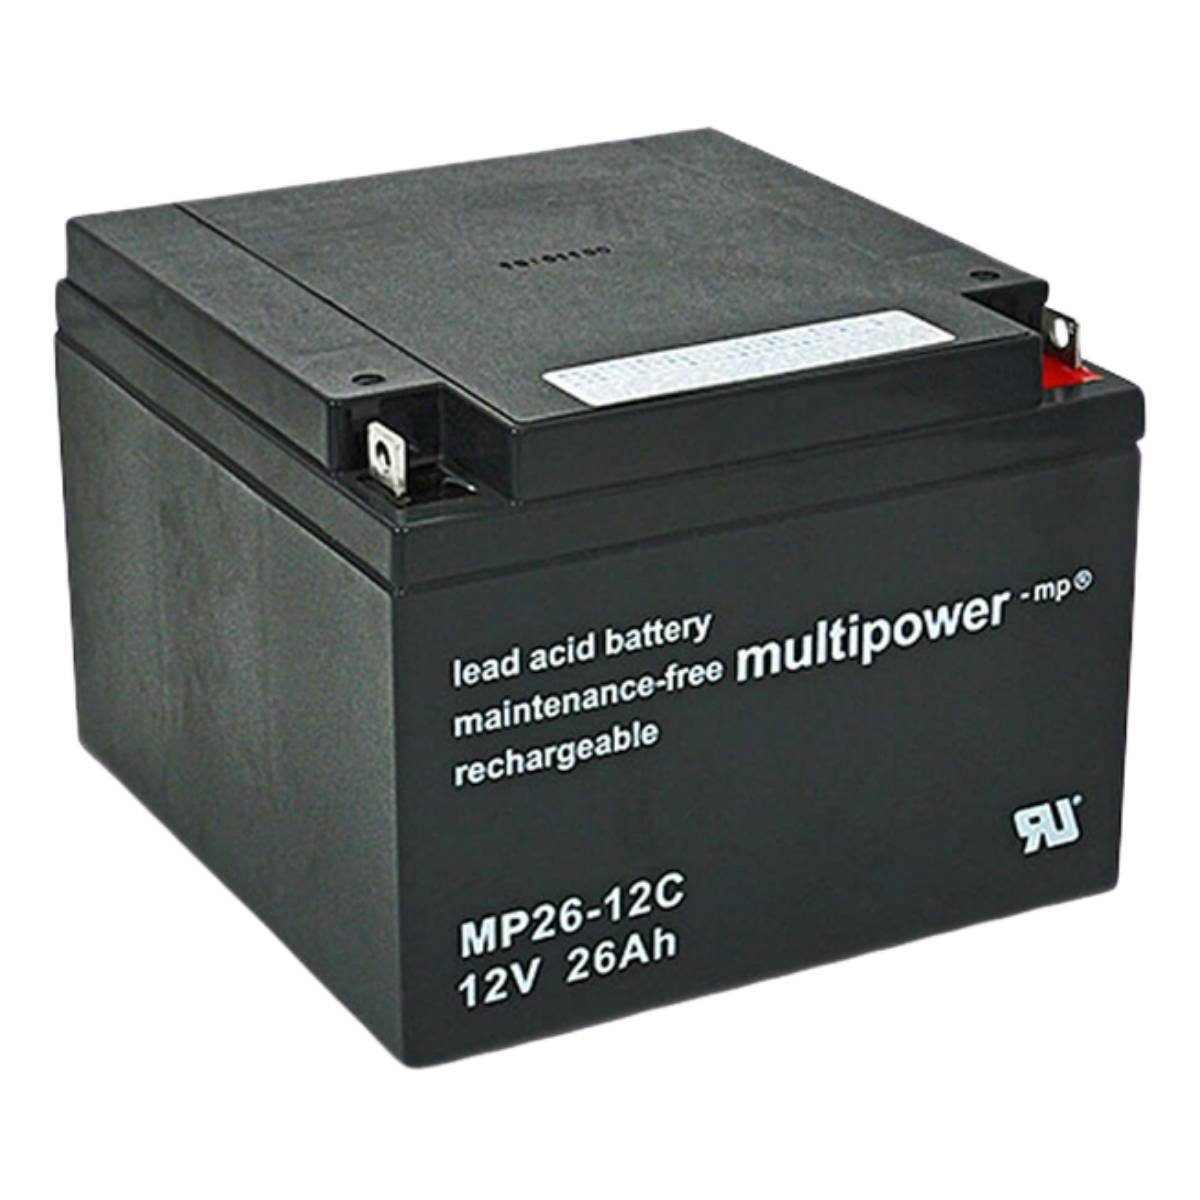 Multipower multipower MP26-12C Batterie 12V 26Ah Akku Rollstuhl Batterie, (12 V)